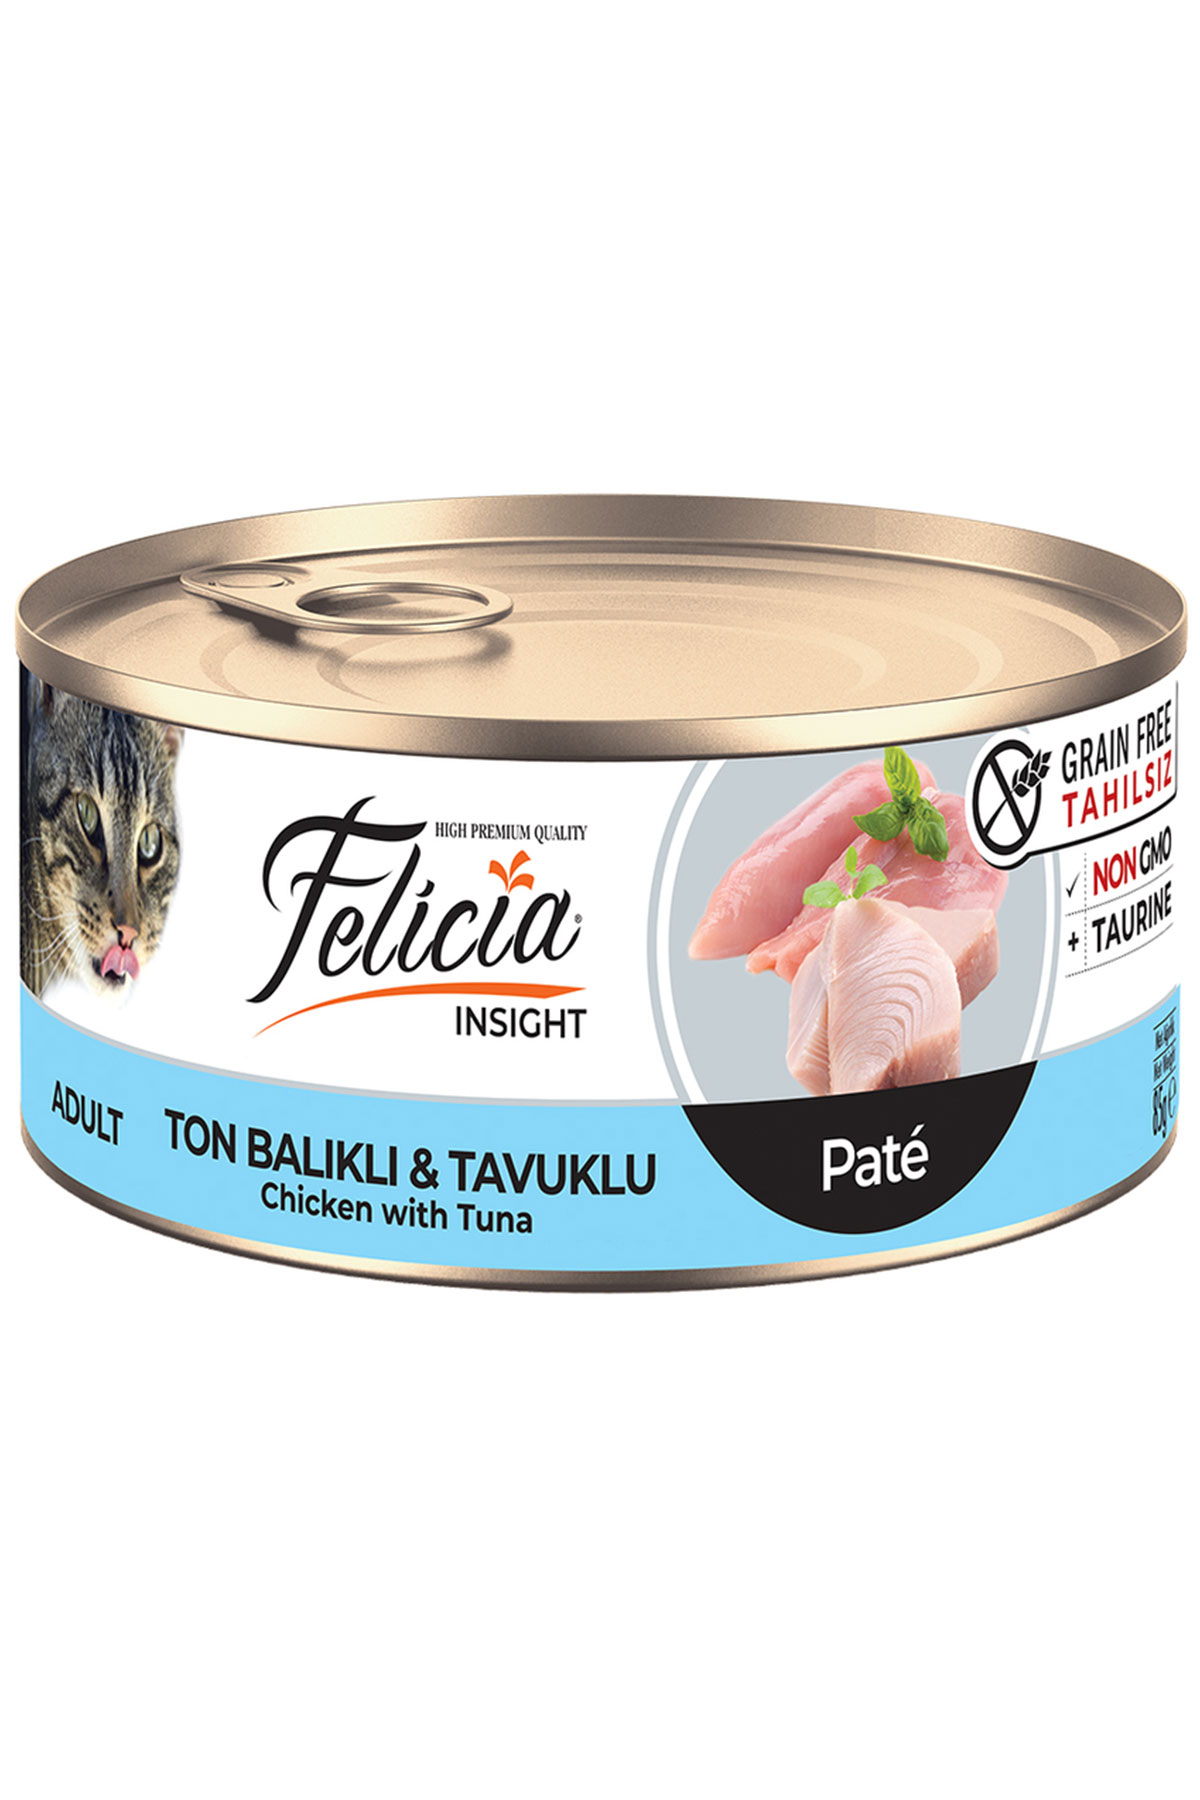 Felicia Ton Balıklı ve Tavuklu Yetişkin Kıyılmış Kedi Konservesi 85gr